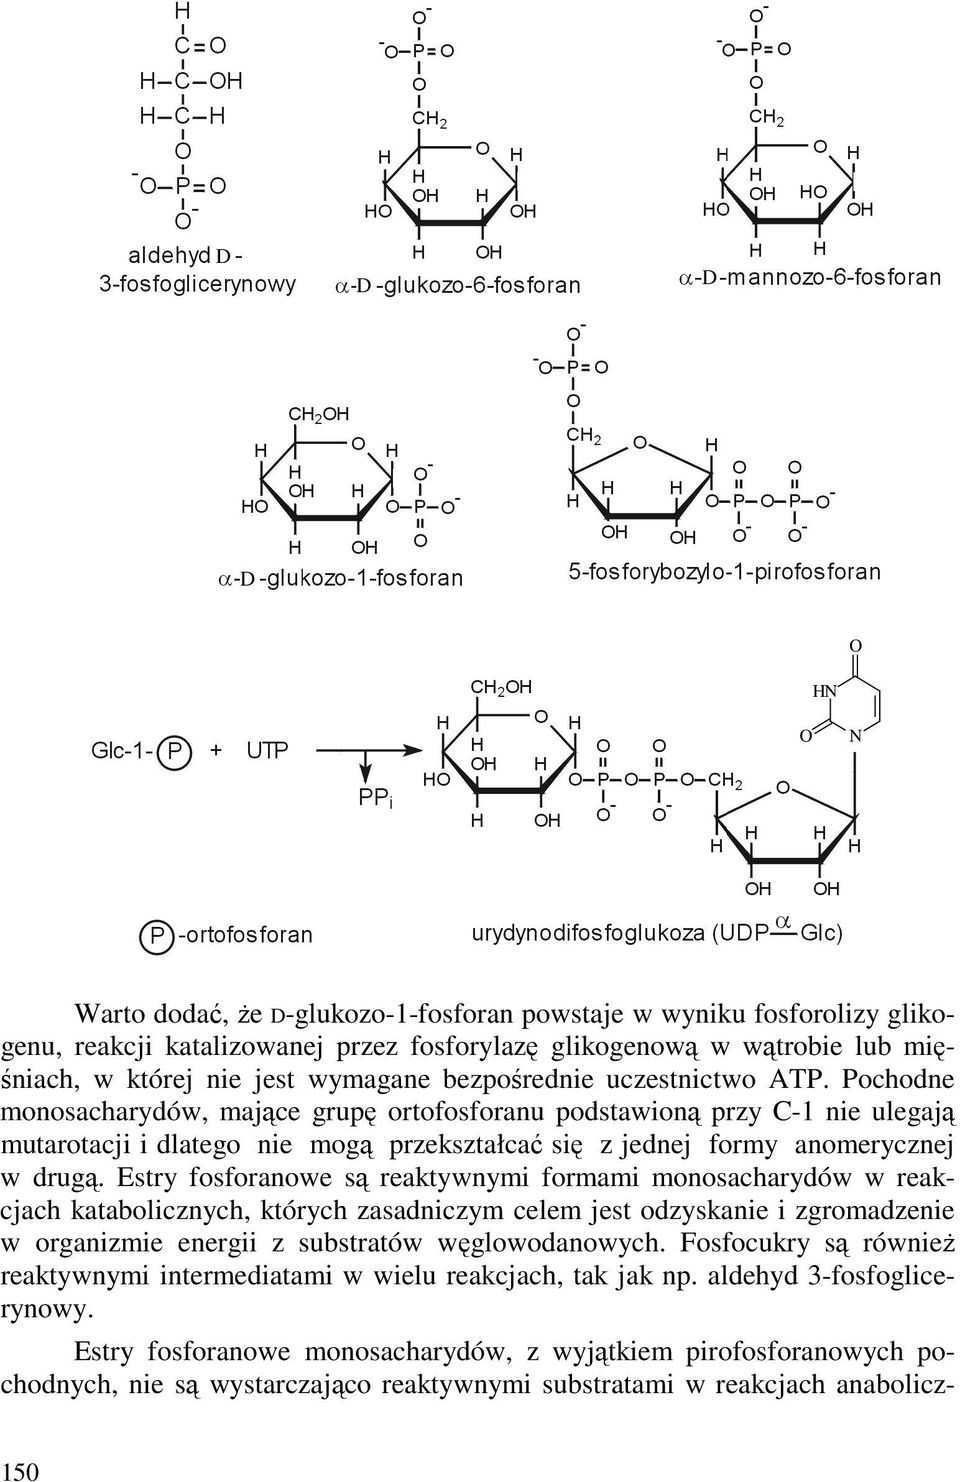 Estry fosforanowe są reaktywnymi formami monosacharydów w reakcjach katabolicznych, których zasadniczym celem jest odzyskanie i zgromadzenie w organizmie energii z substratów węglowodanowych.